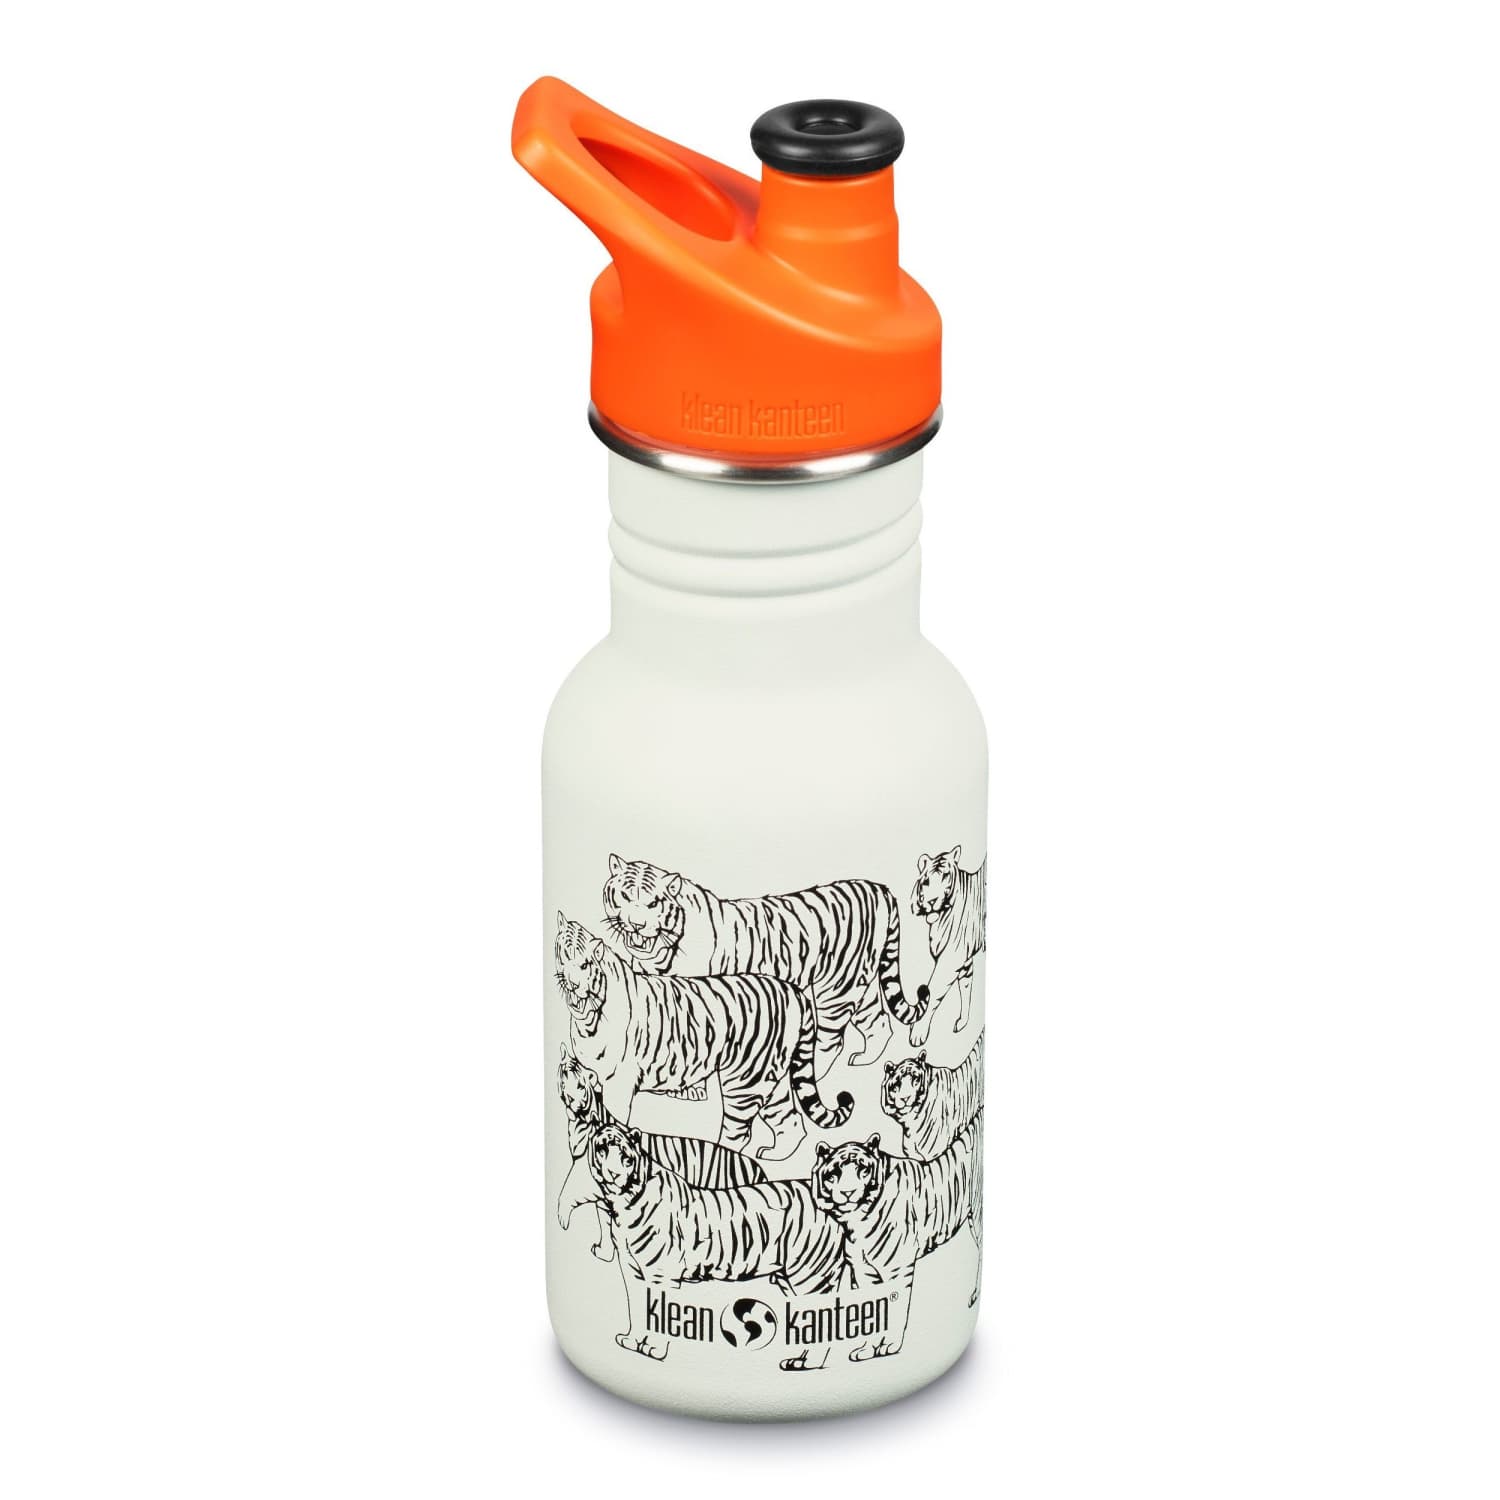 Klean kanteen kids reusable stainless steel water bottle White orange tigers